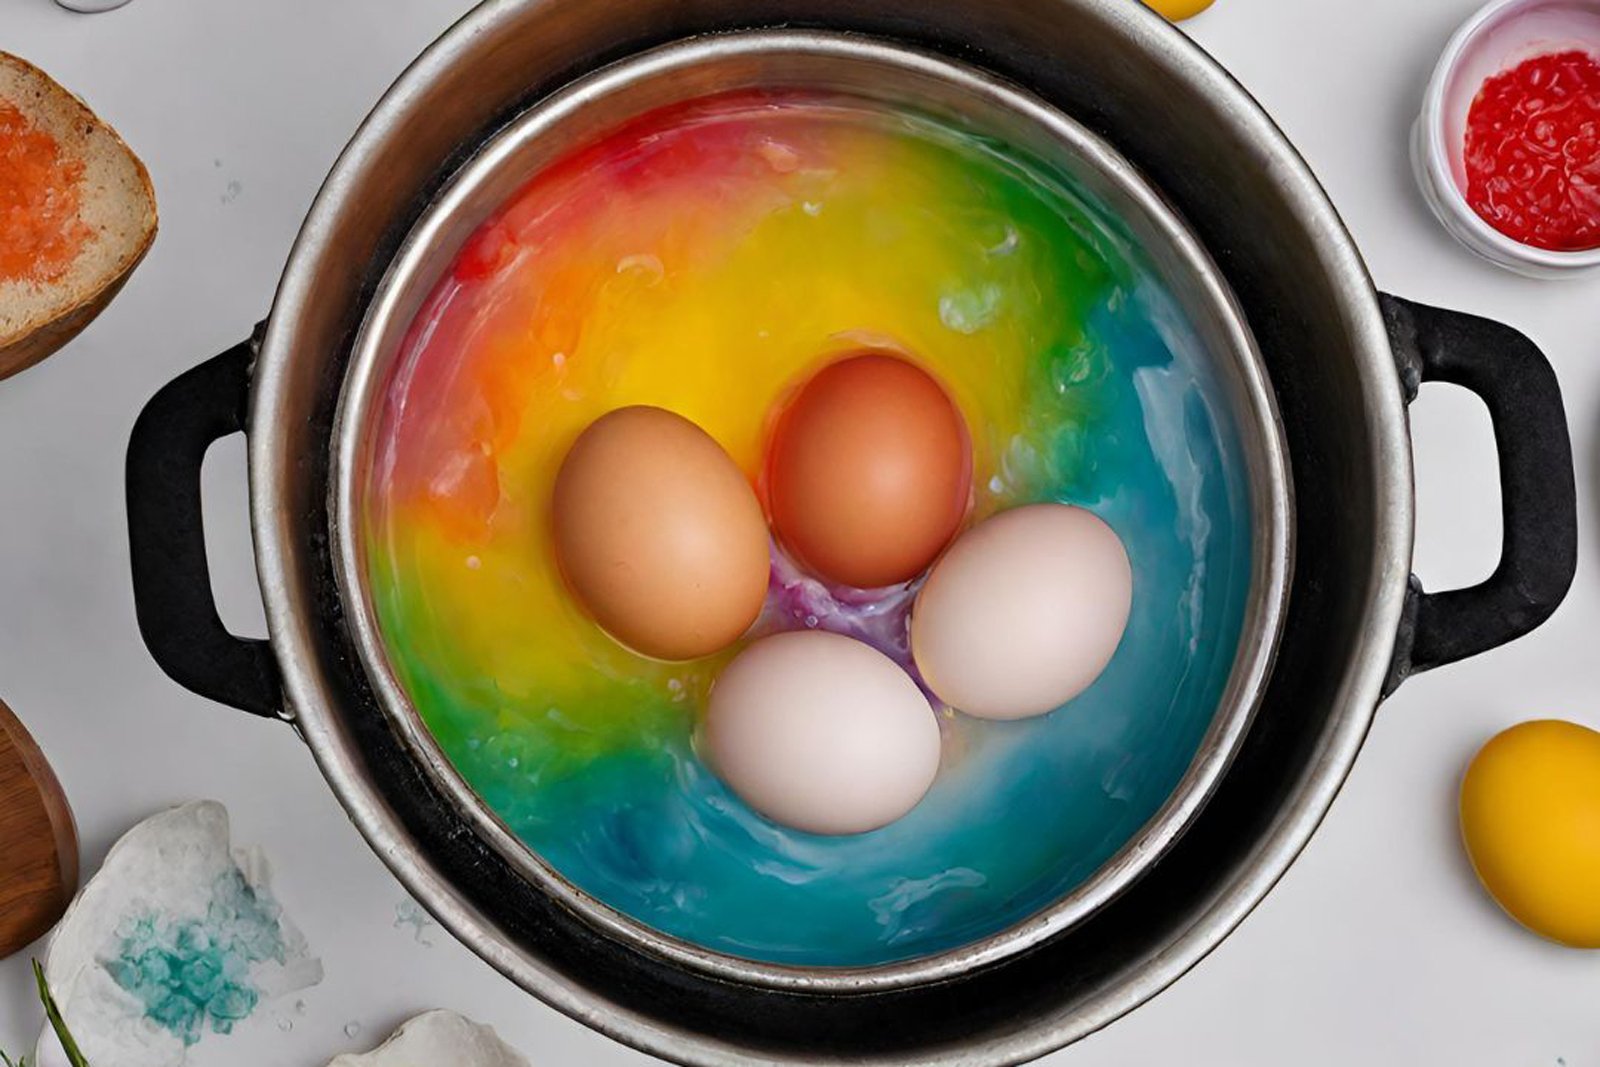 Das Bild zeigt einen Kochtopf mit Eiern. 